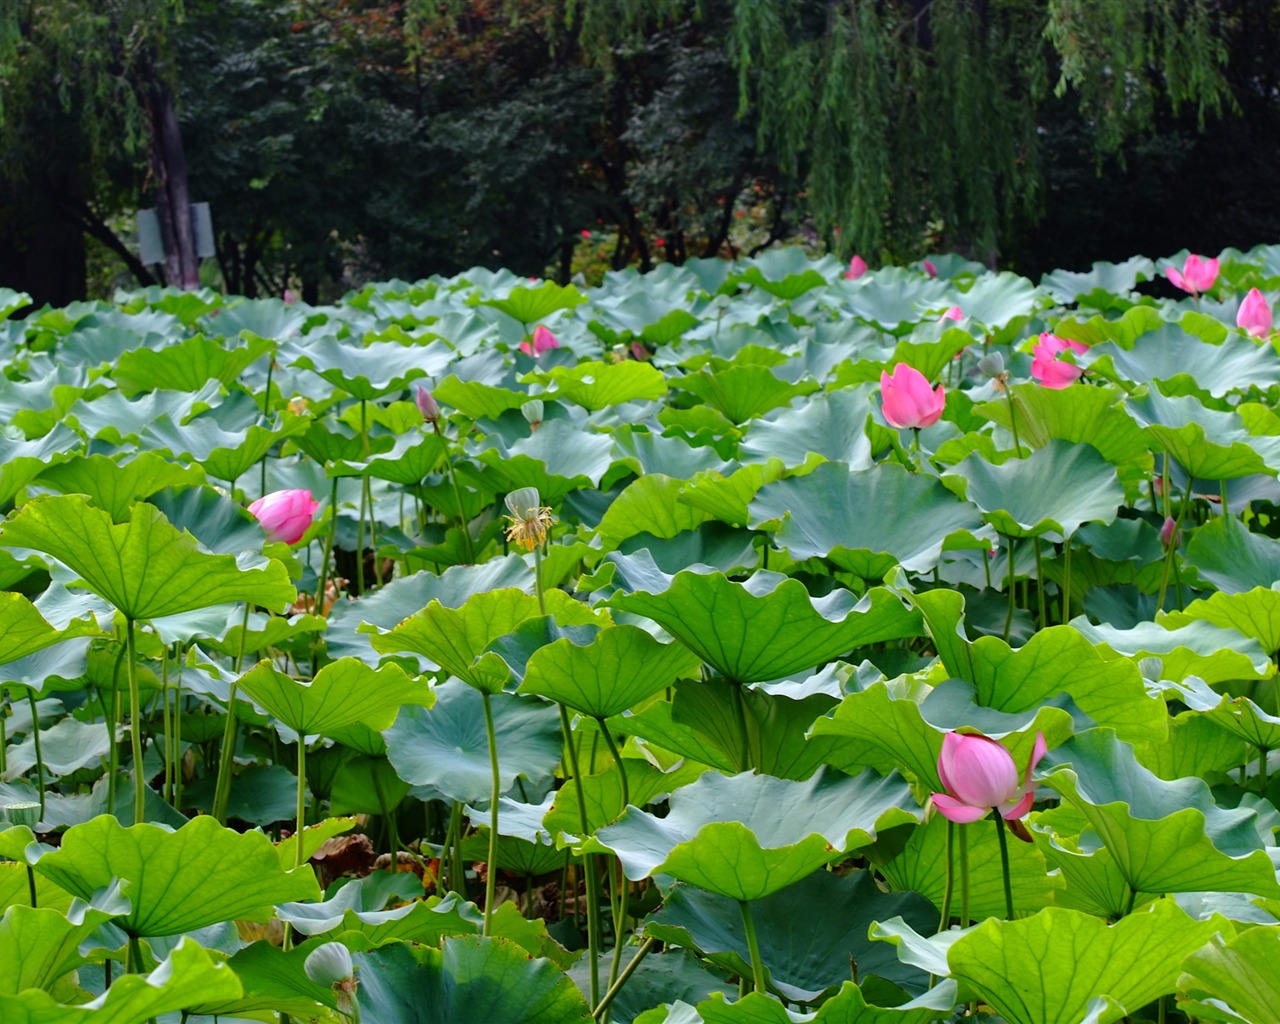 Rose Garden of the Lotus (rebar works) #10 - 1280x1024